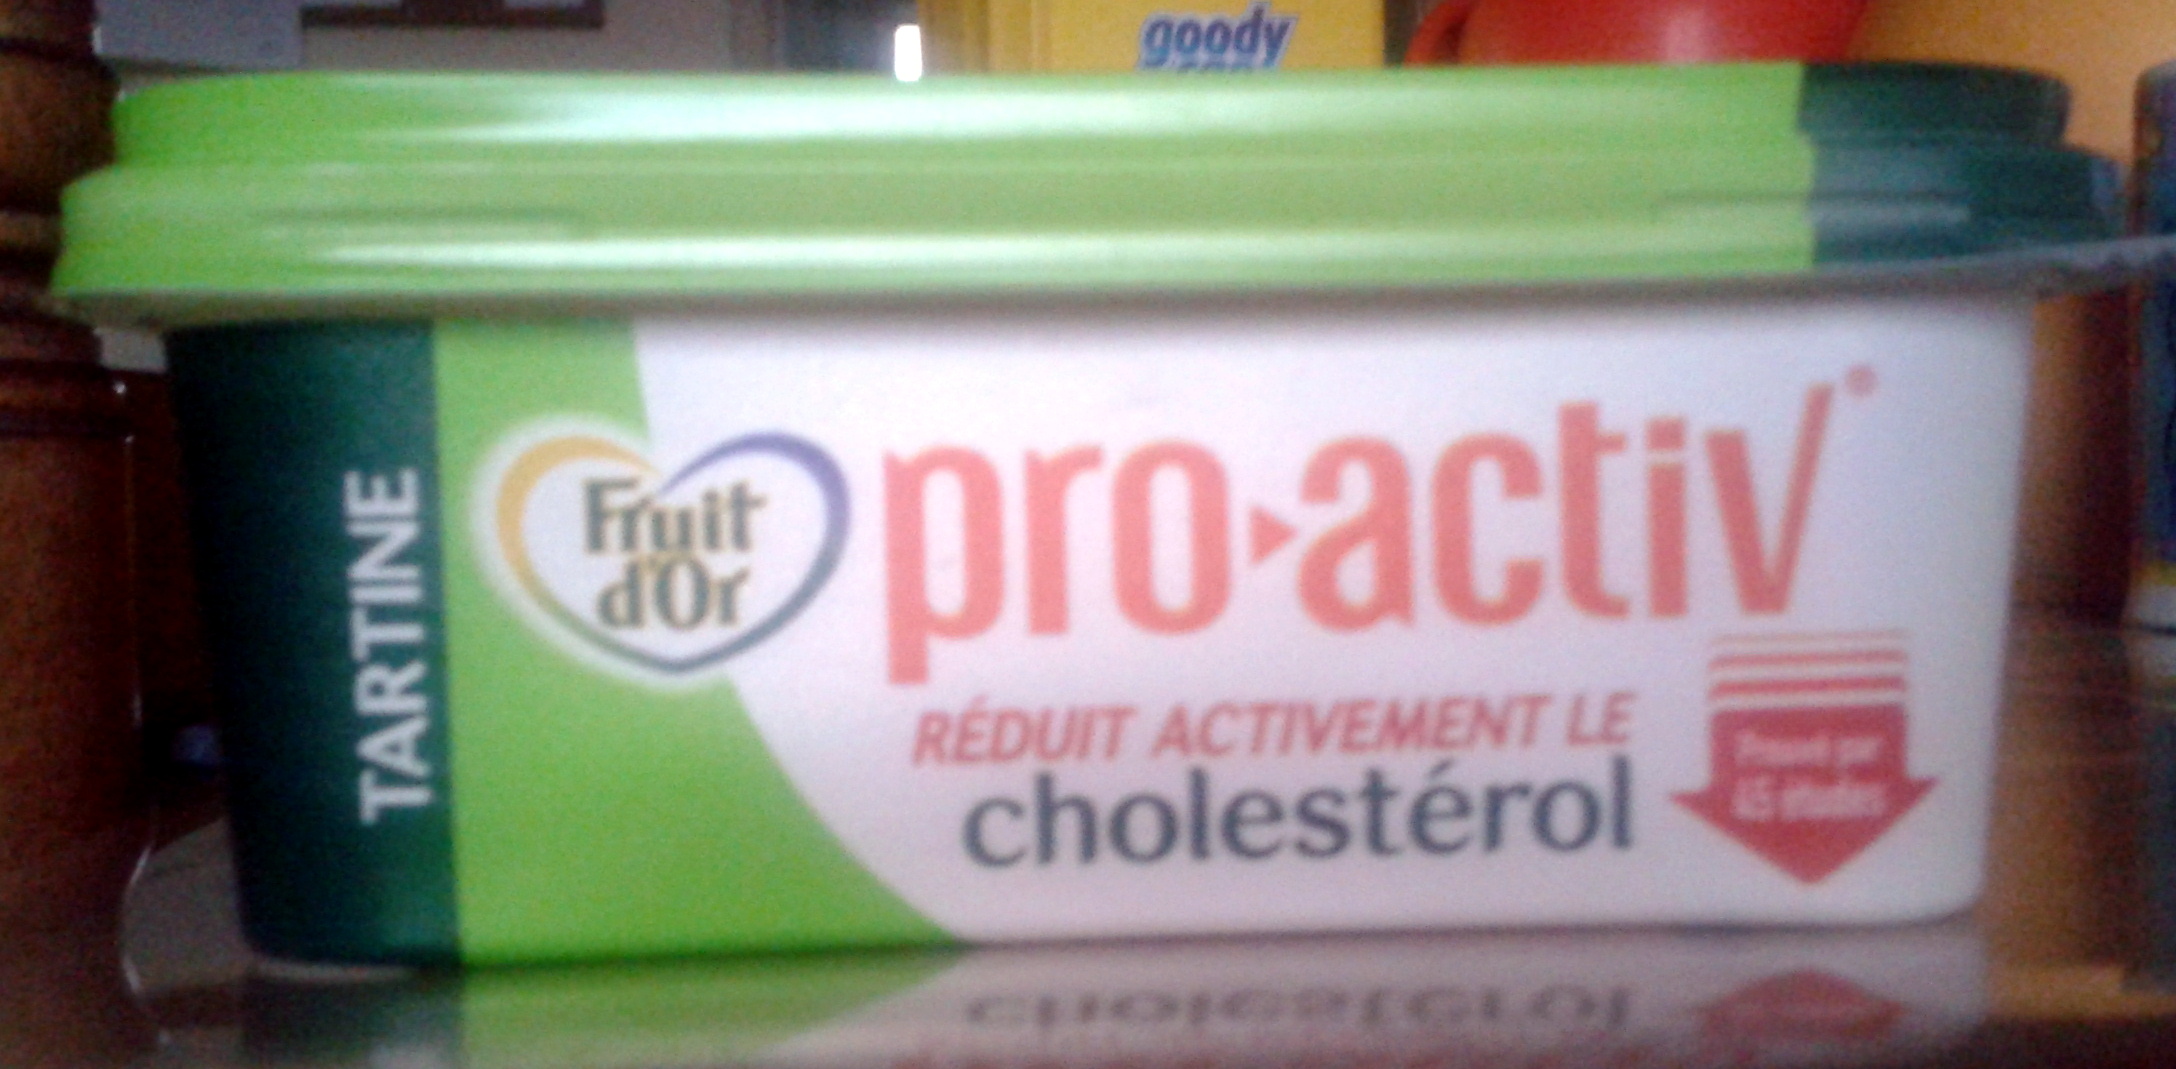 pro-activ réduit activement le cholestérol - نتاج - fr